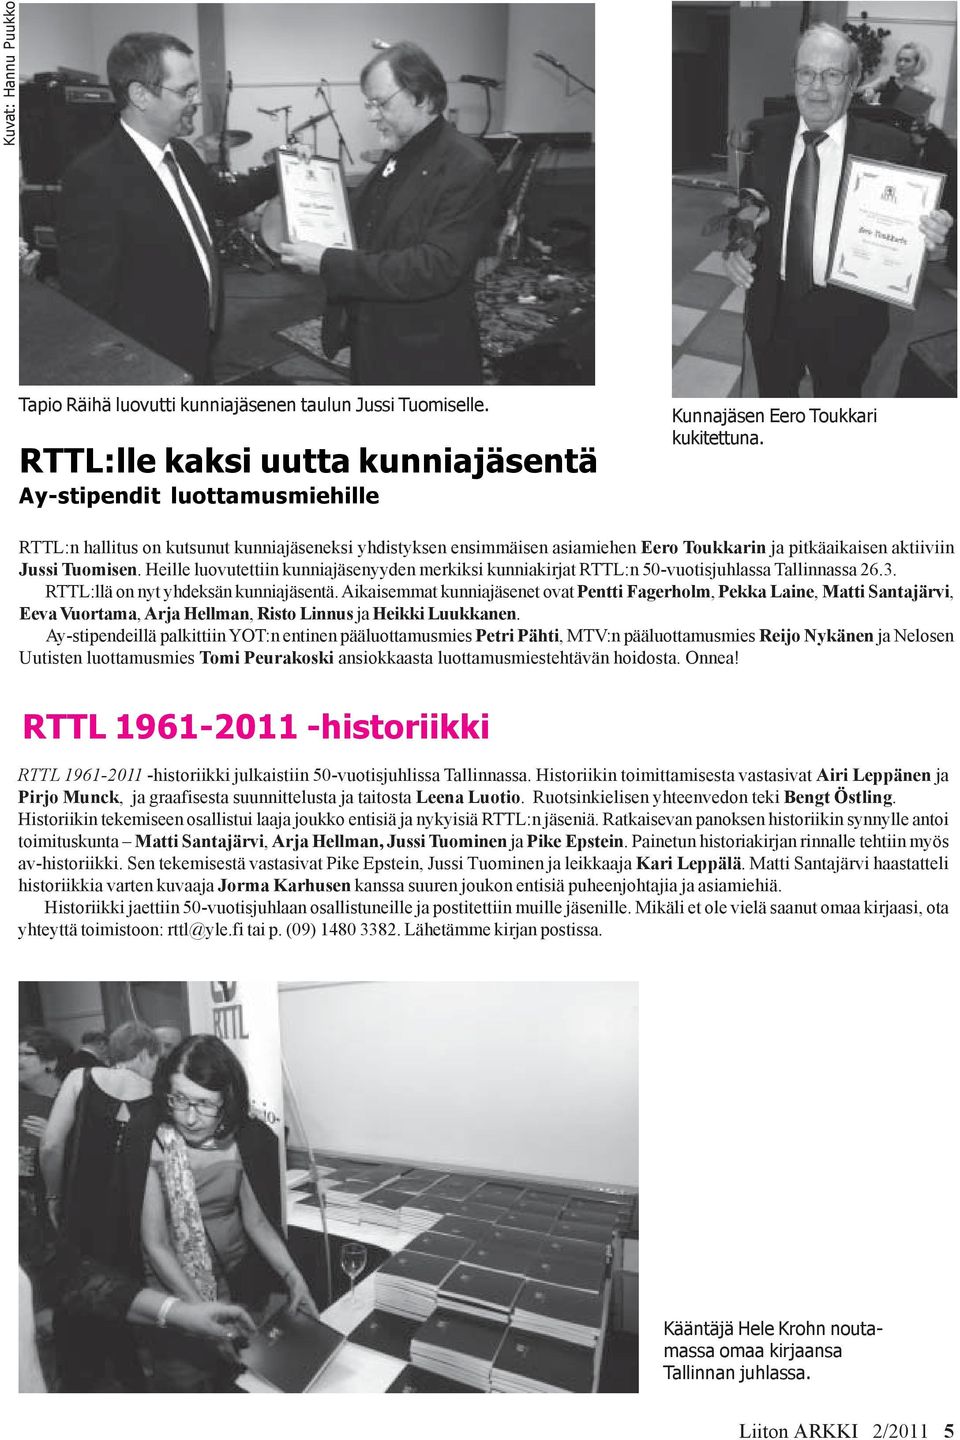 Heille luovutettiin kunniajäsenyyden merkiksi kunniakirjat RTTL:n 50-vuotisjuhlassa Tallinnassa 26.3. RTTL:llä on nyt yhdeksän kunniajäsentä.